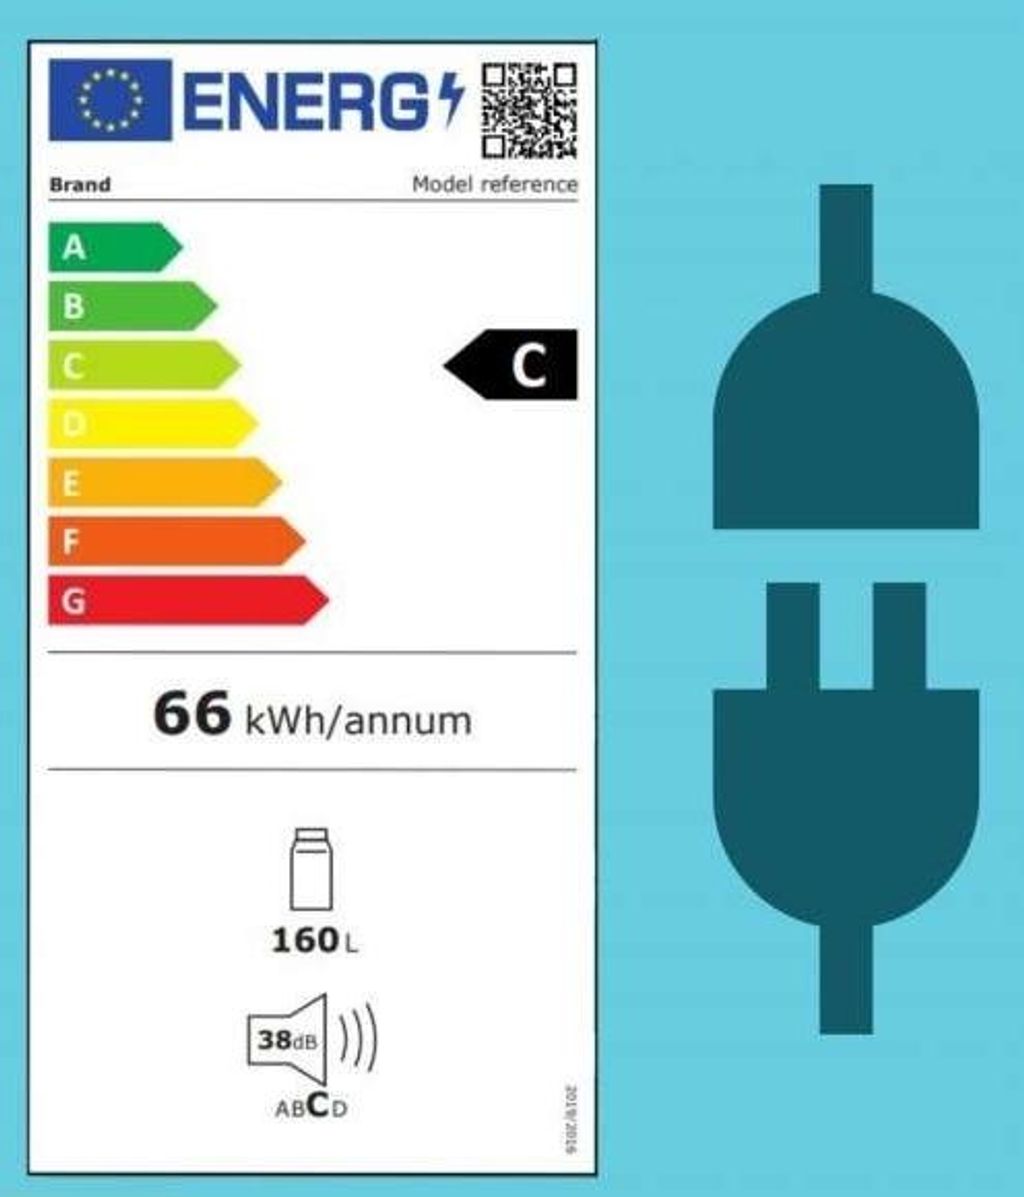 Etiqueta de eficiencia energetica